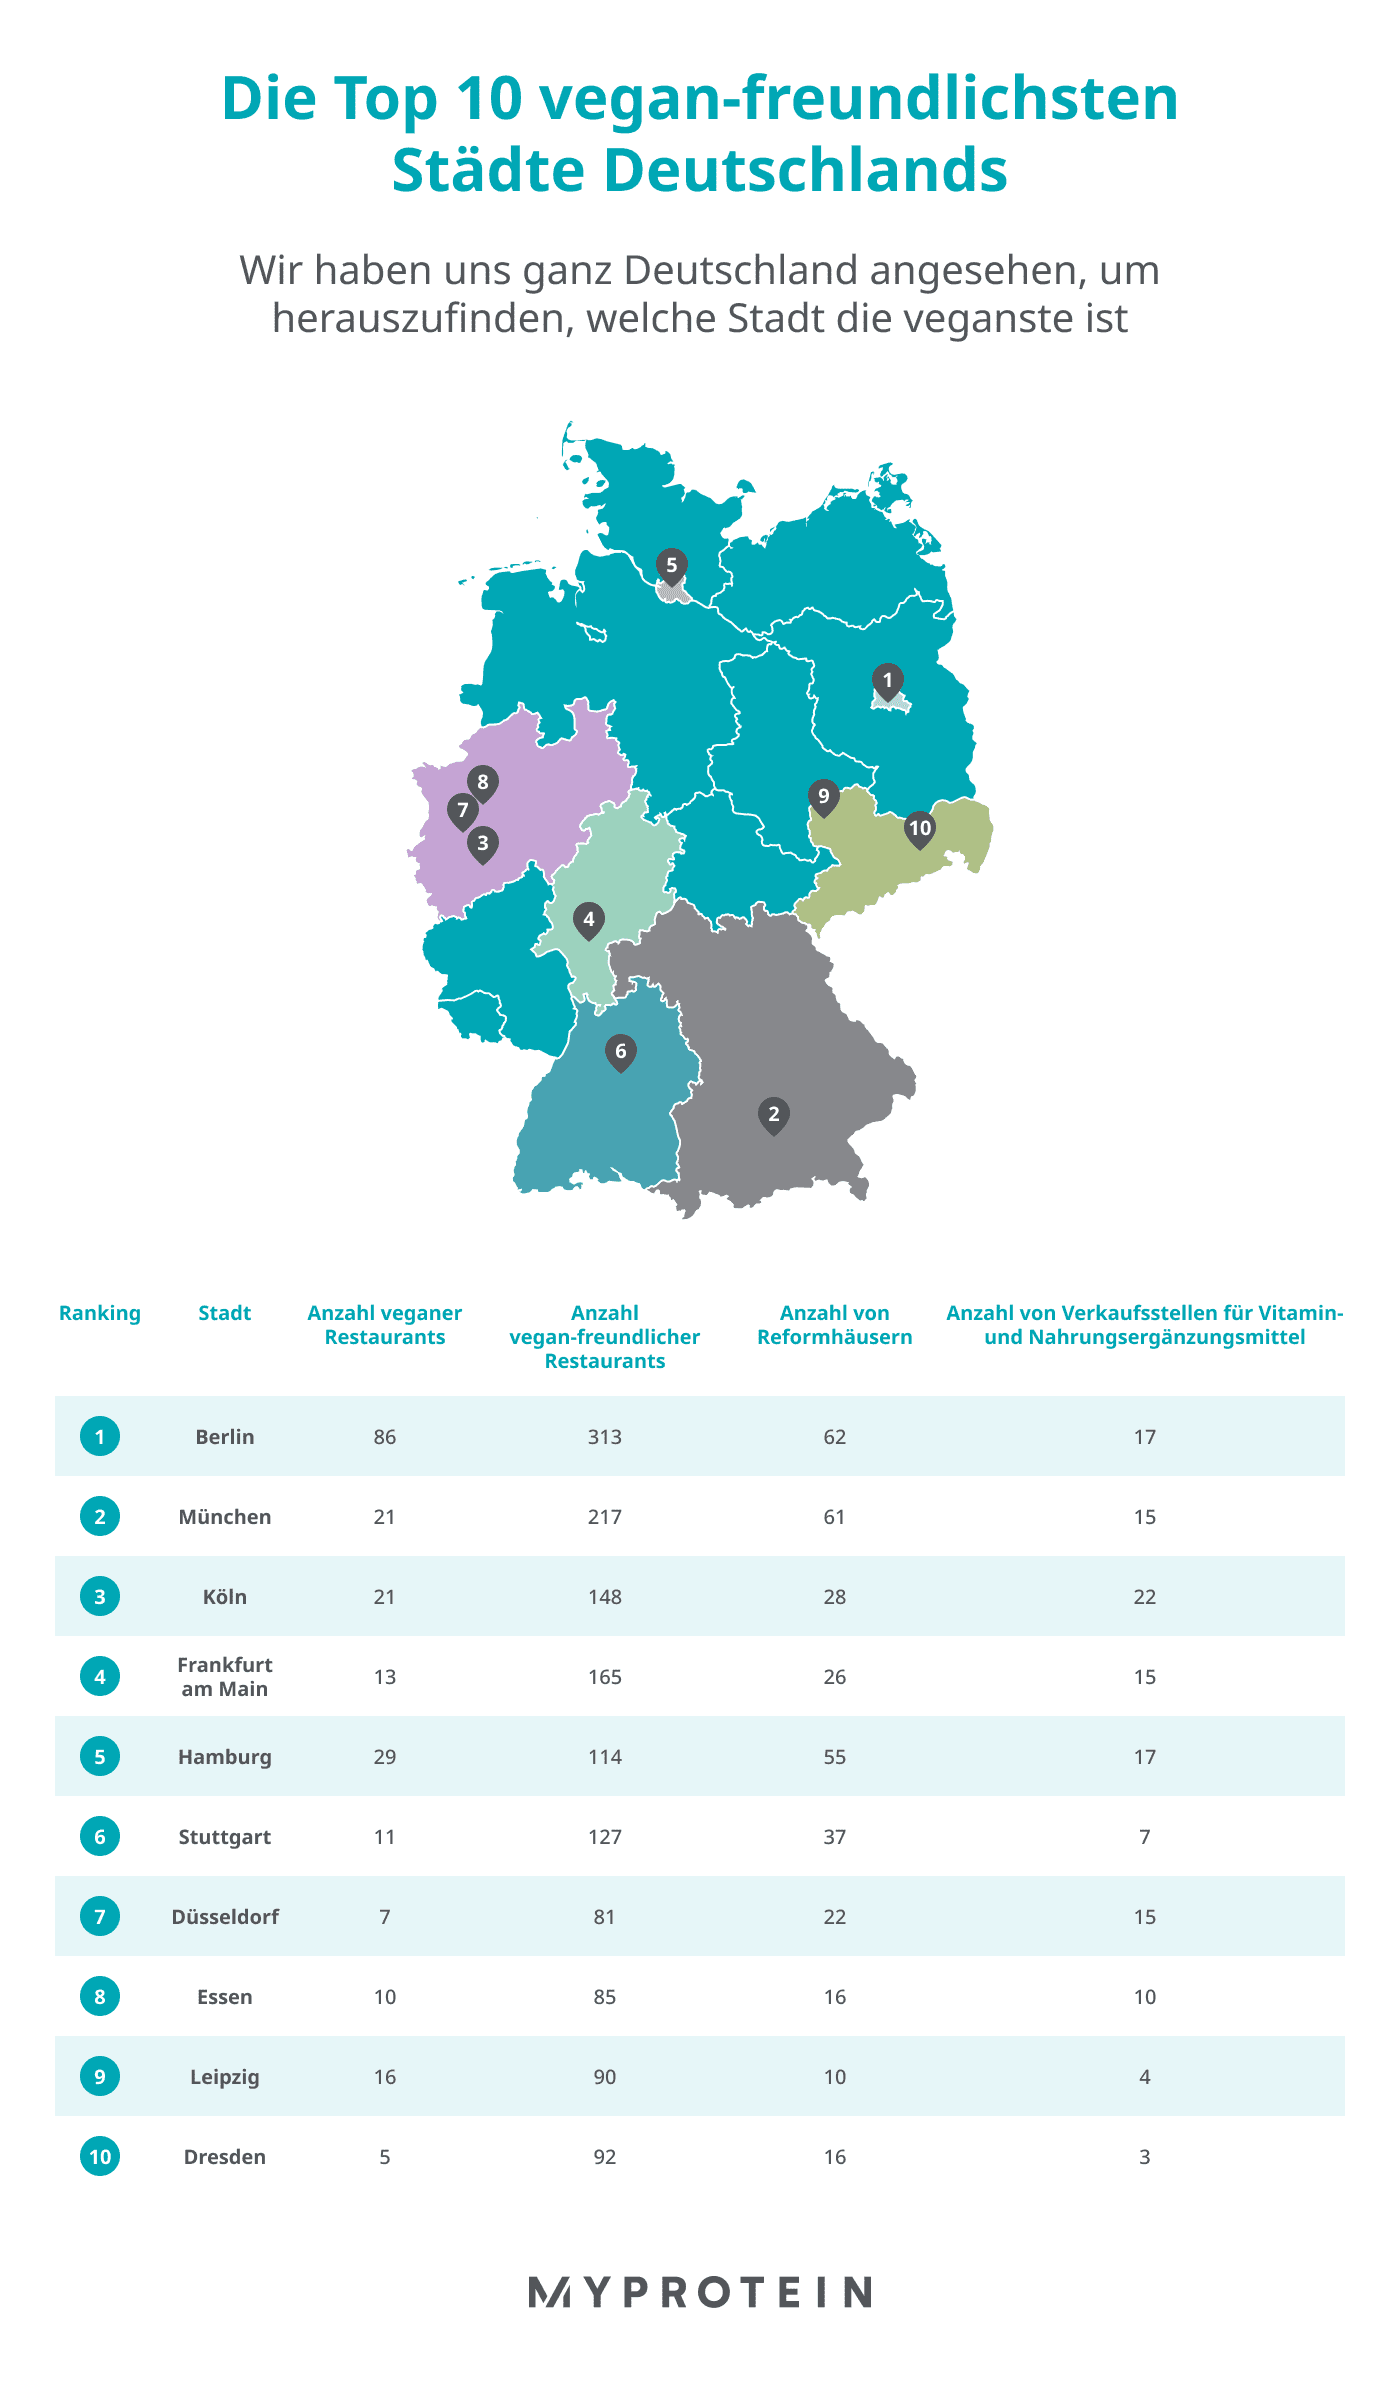 Deutschlands vegan-freundlichste Städte